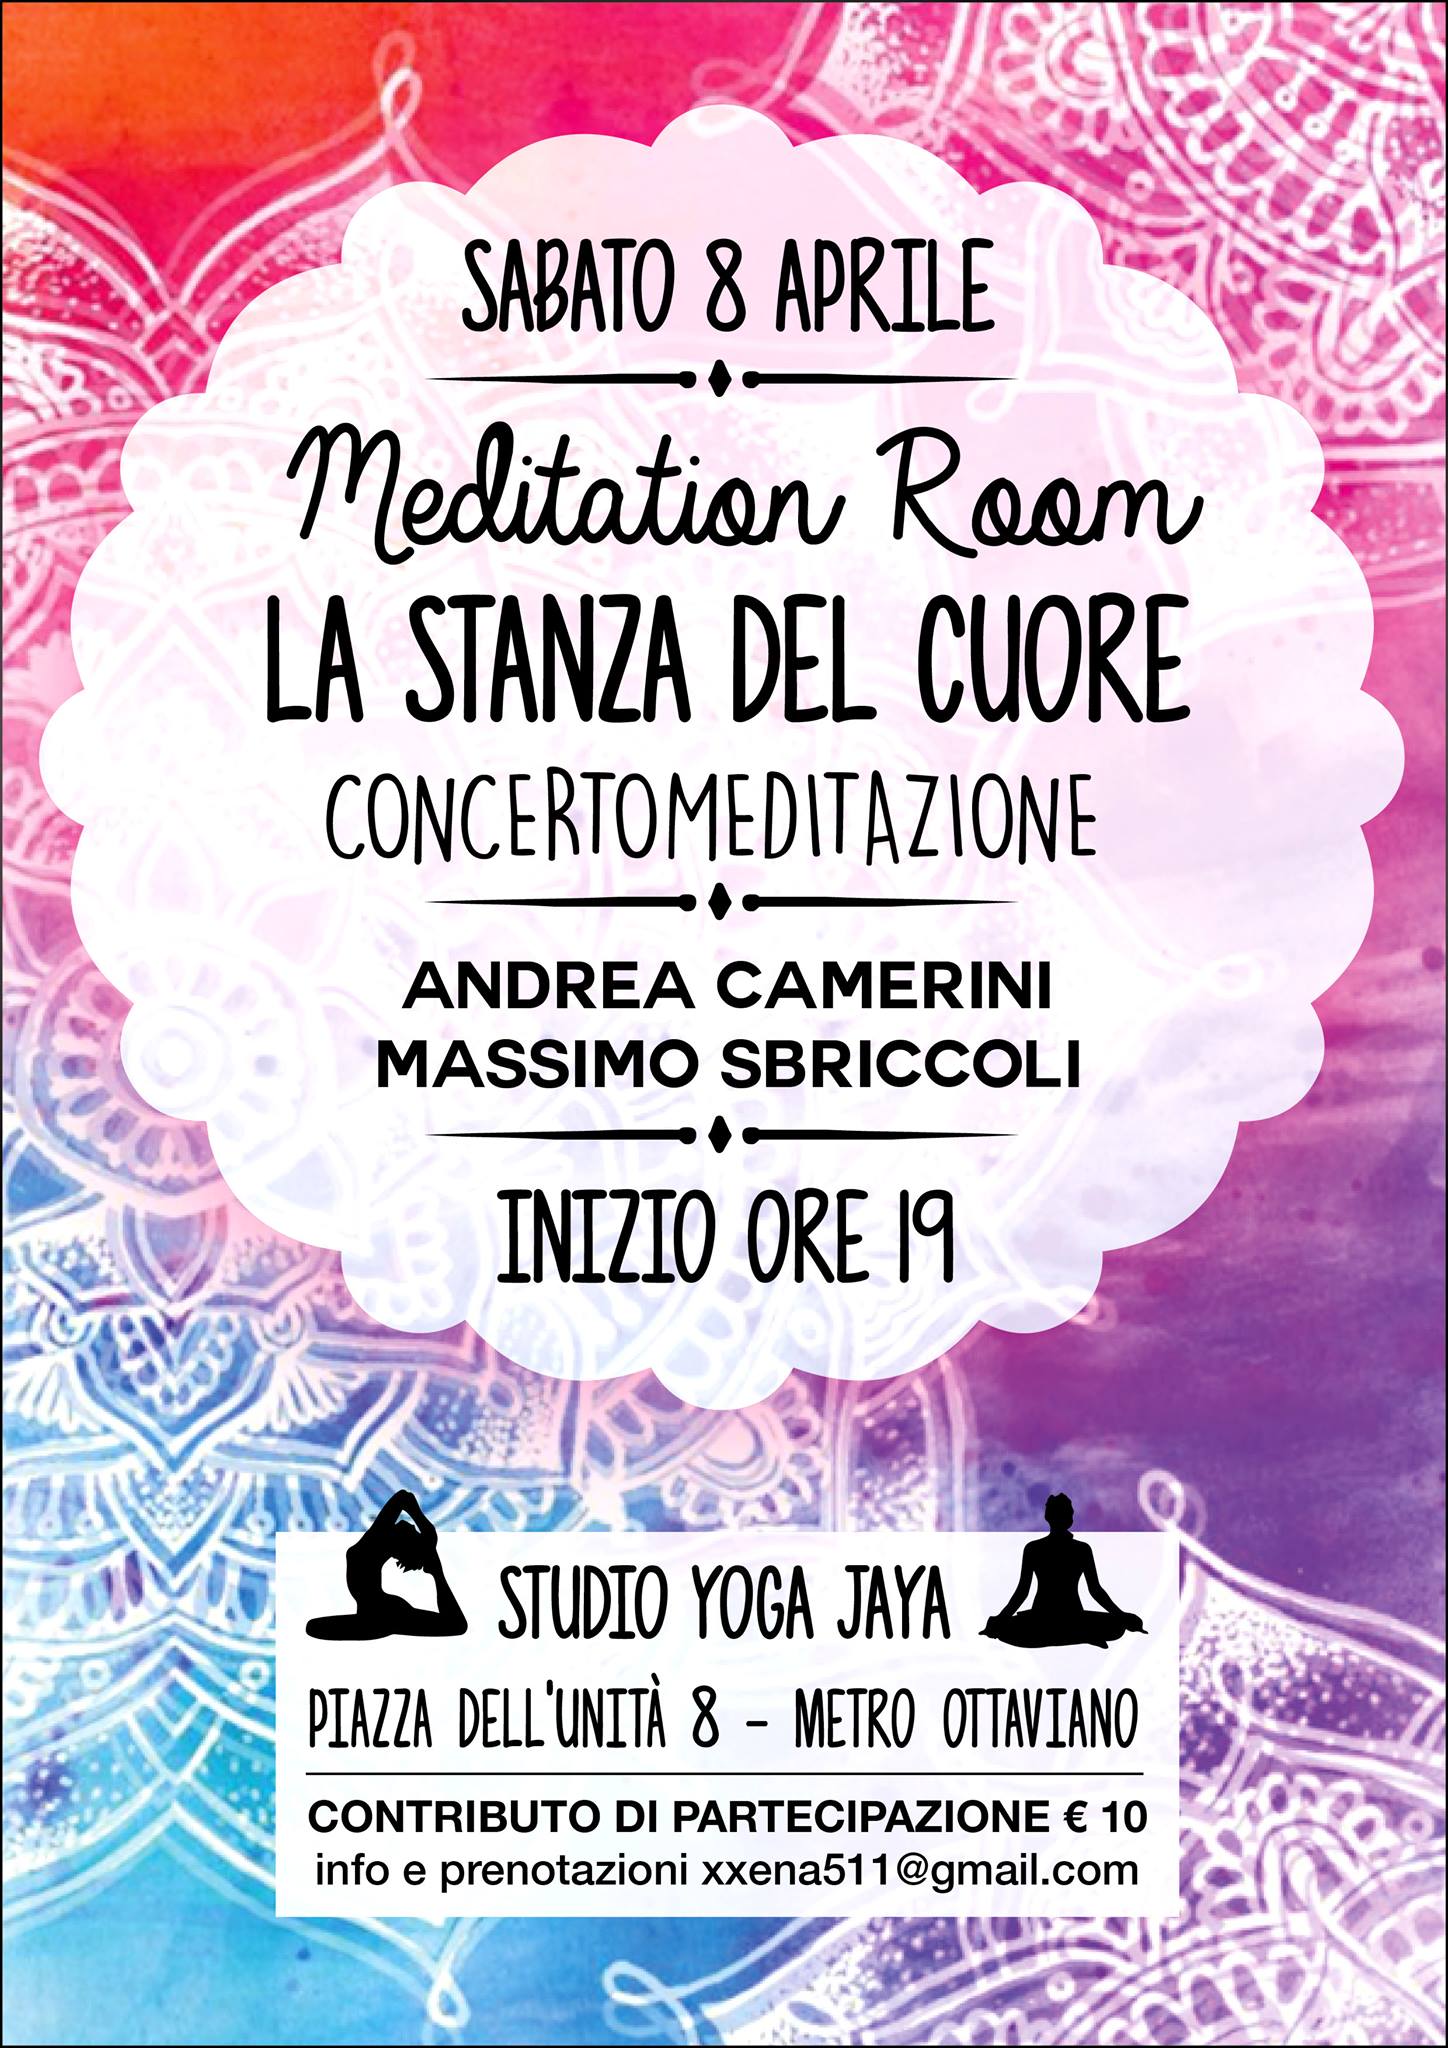 Meditation Room La stanza del Cuore Andrea Camerini Massimo Sbriccoli